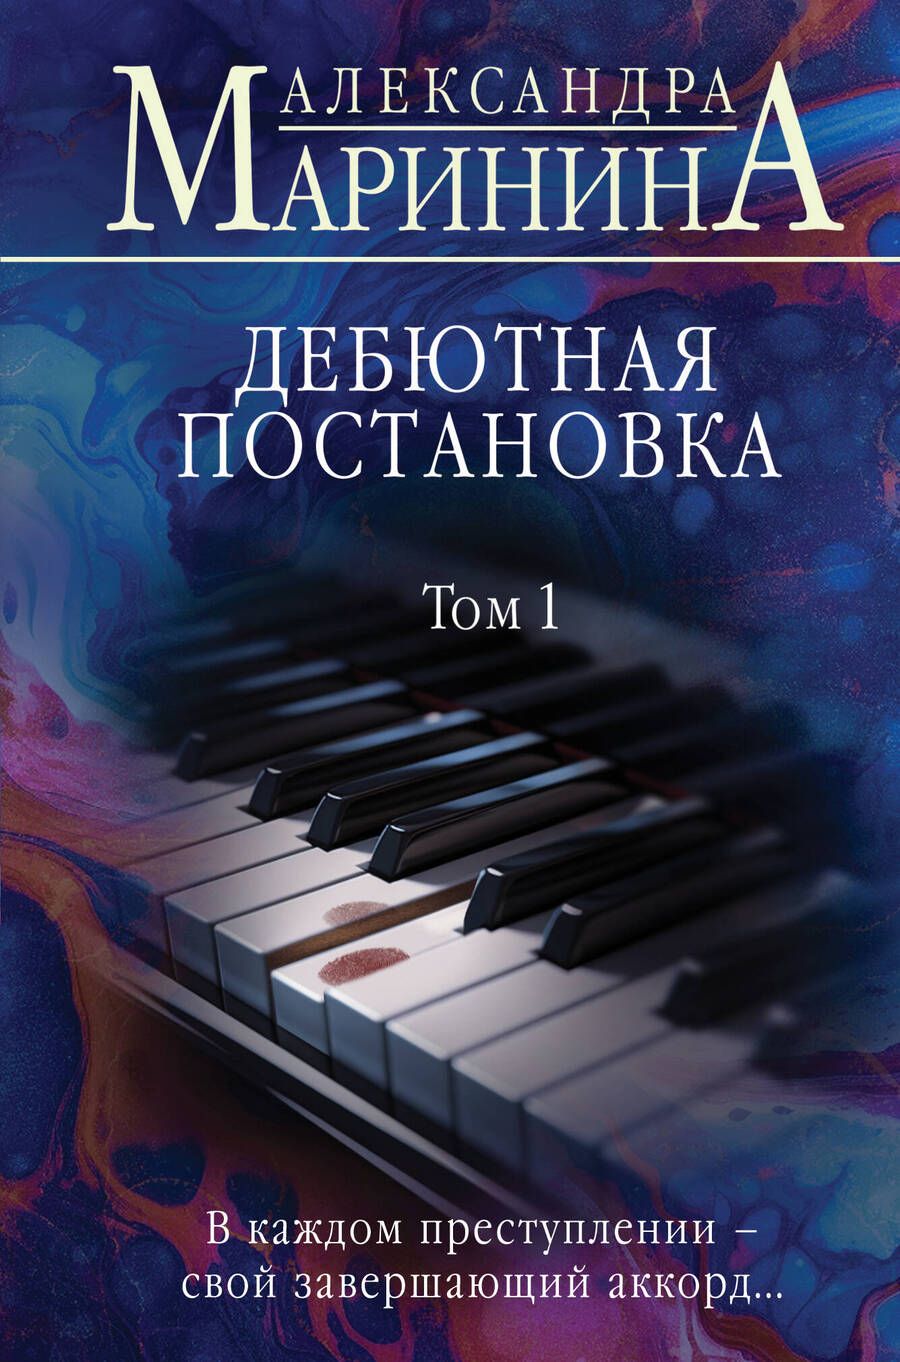 Обложка книги "Александра Маринина: Дебютная постановка. Том 1"